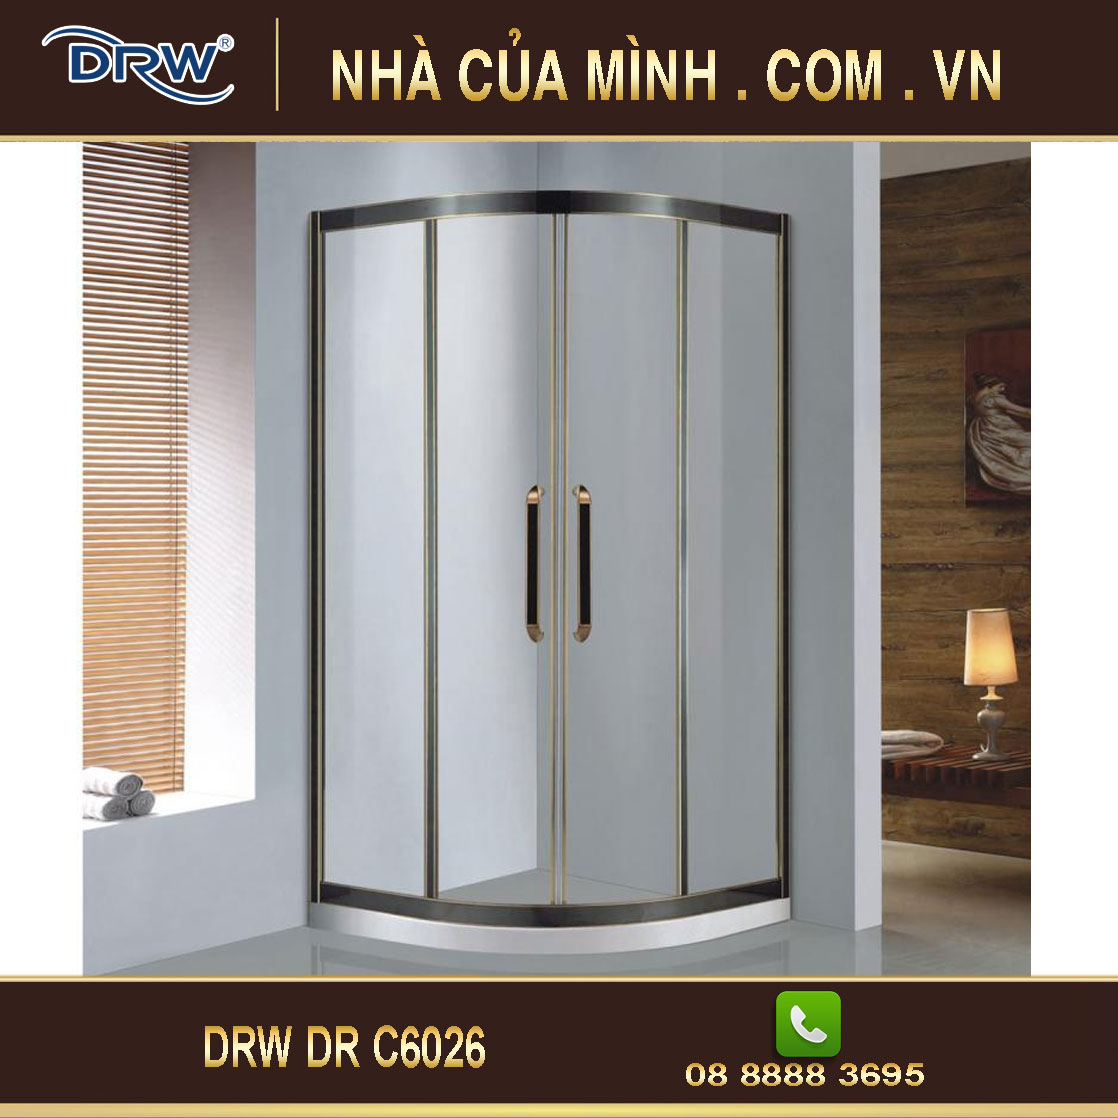 Vách kính phòng tắm DRW DR C6026 cao cấp